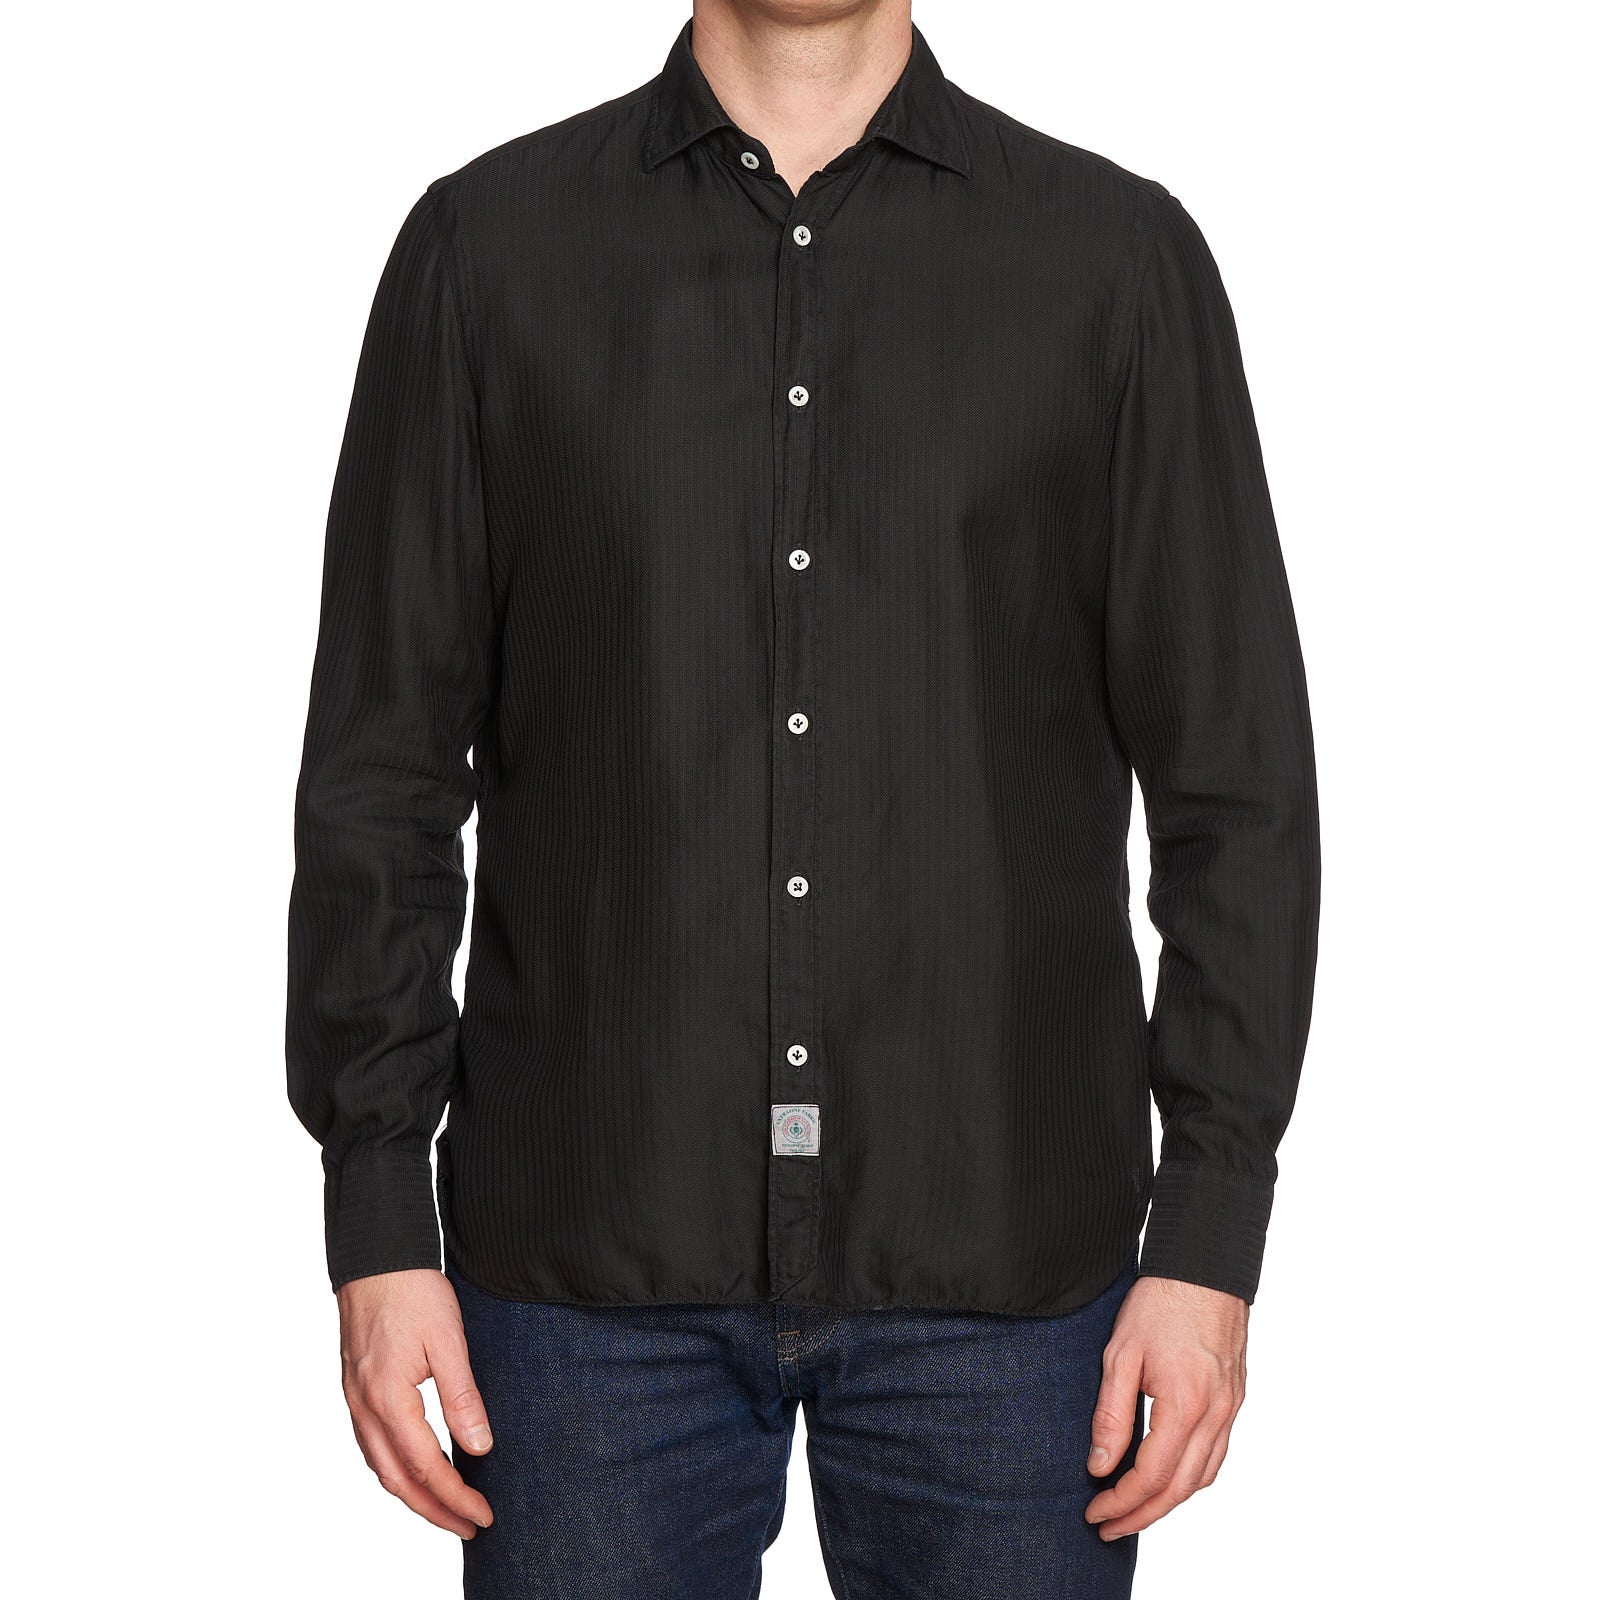 LUIGI BORRELLI Luxury Vintage Black Garment Dyed Cotton Casual Shirt Size M LUIGI BORRELLI